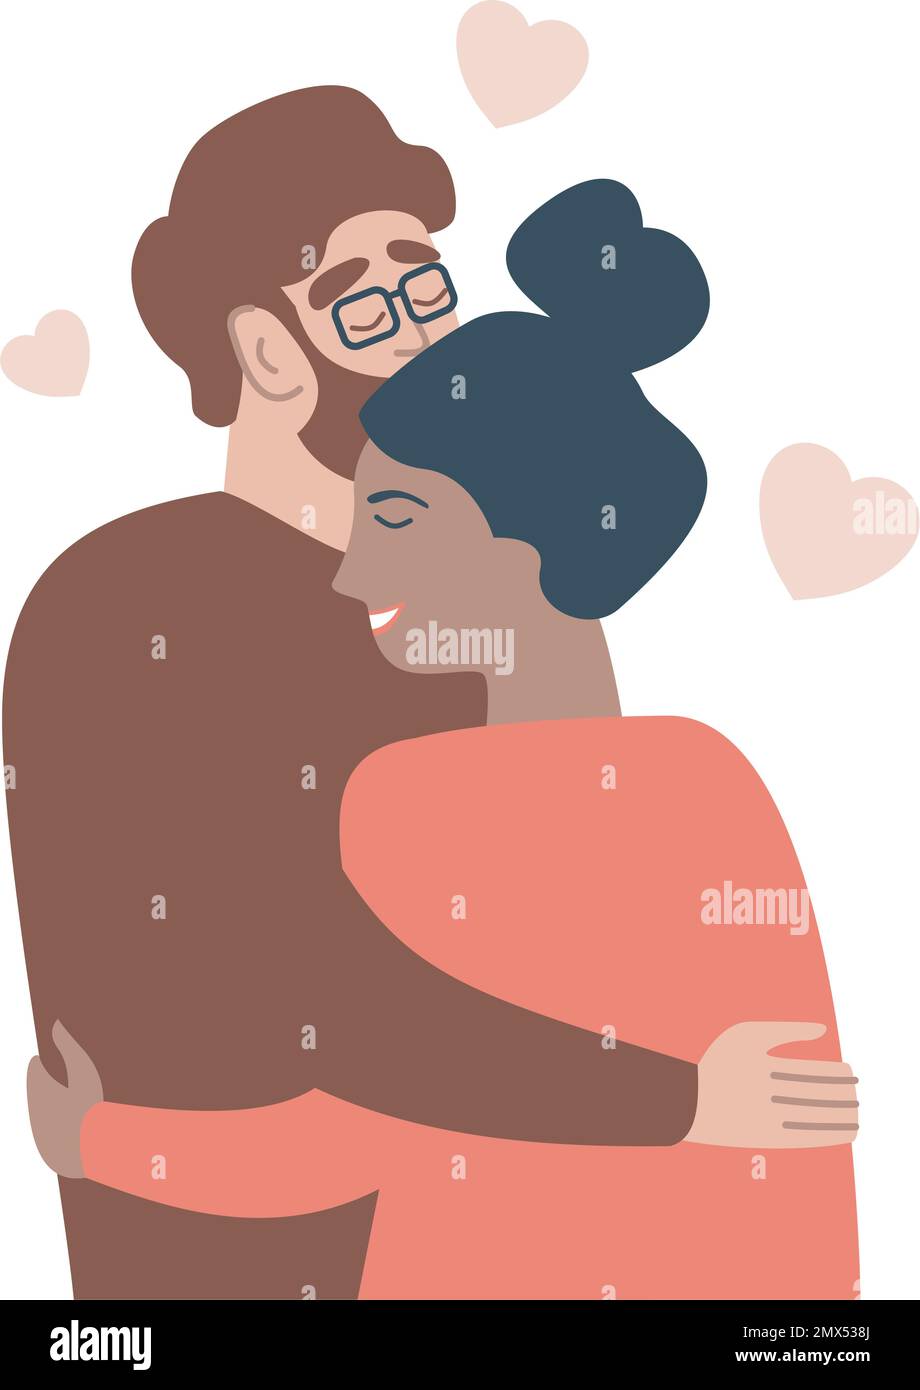 Joven pareja feliz amorosa chico y chica de pie abrazándose abrazándose el uno al otro sintiendo en amor ilustración vectorial plana Ilustración del Vector